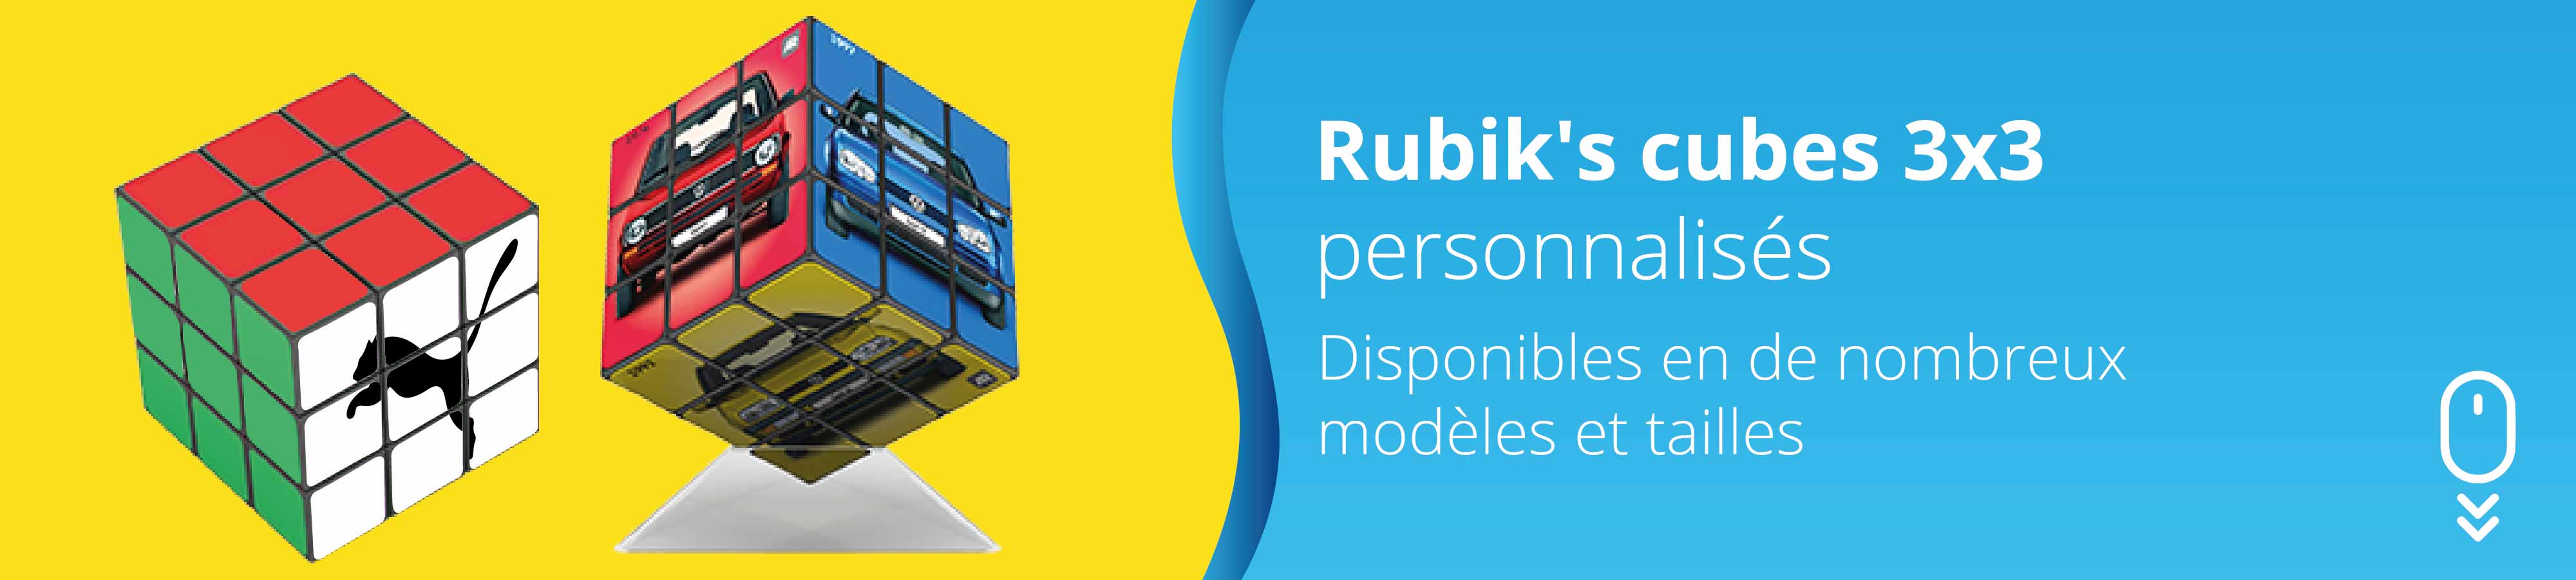 rubiks-cube-3x3-personnalise-publicitaire